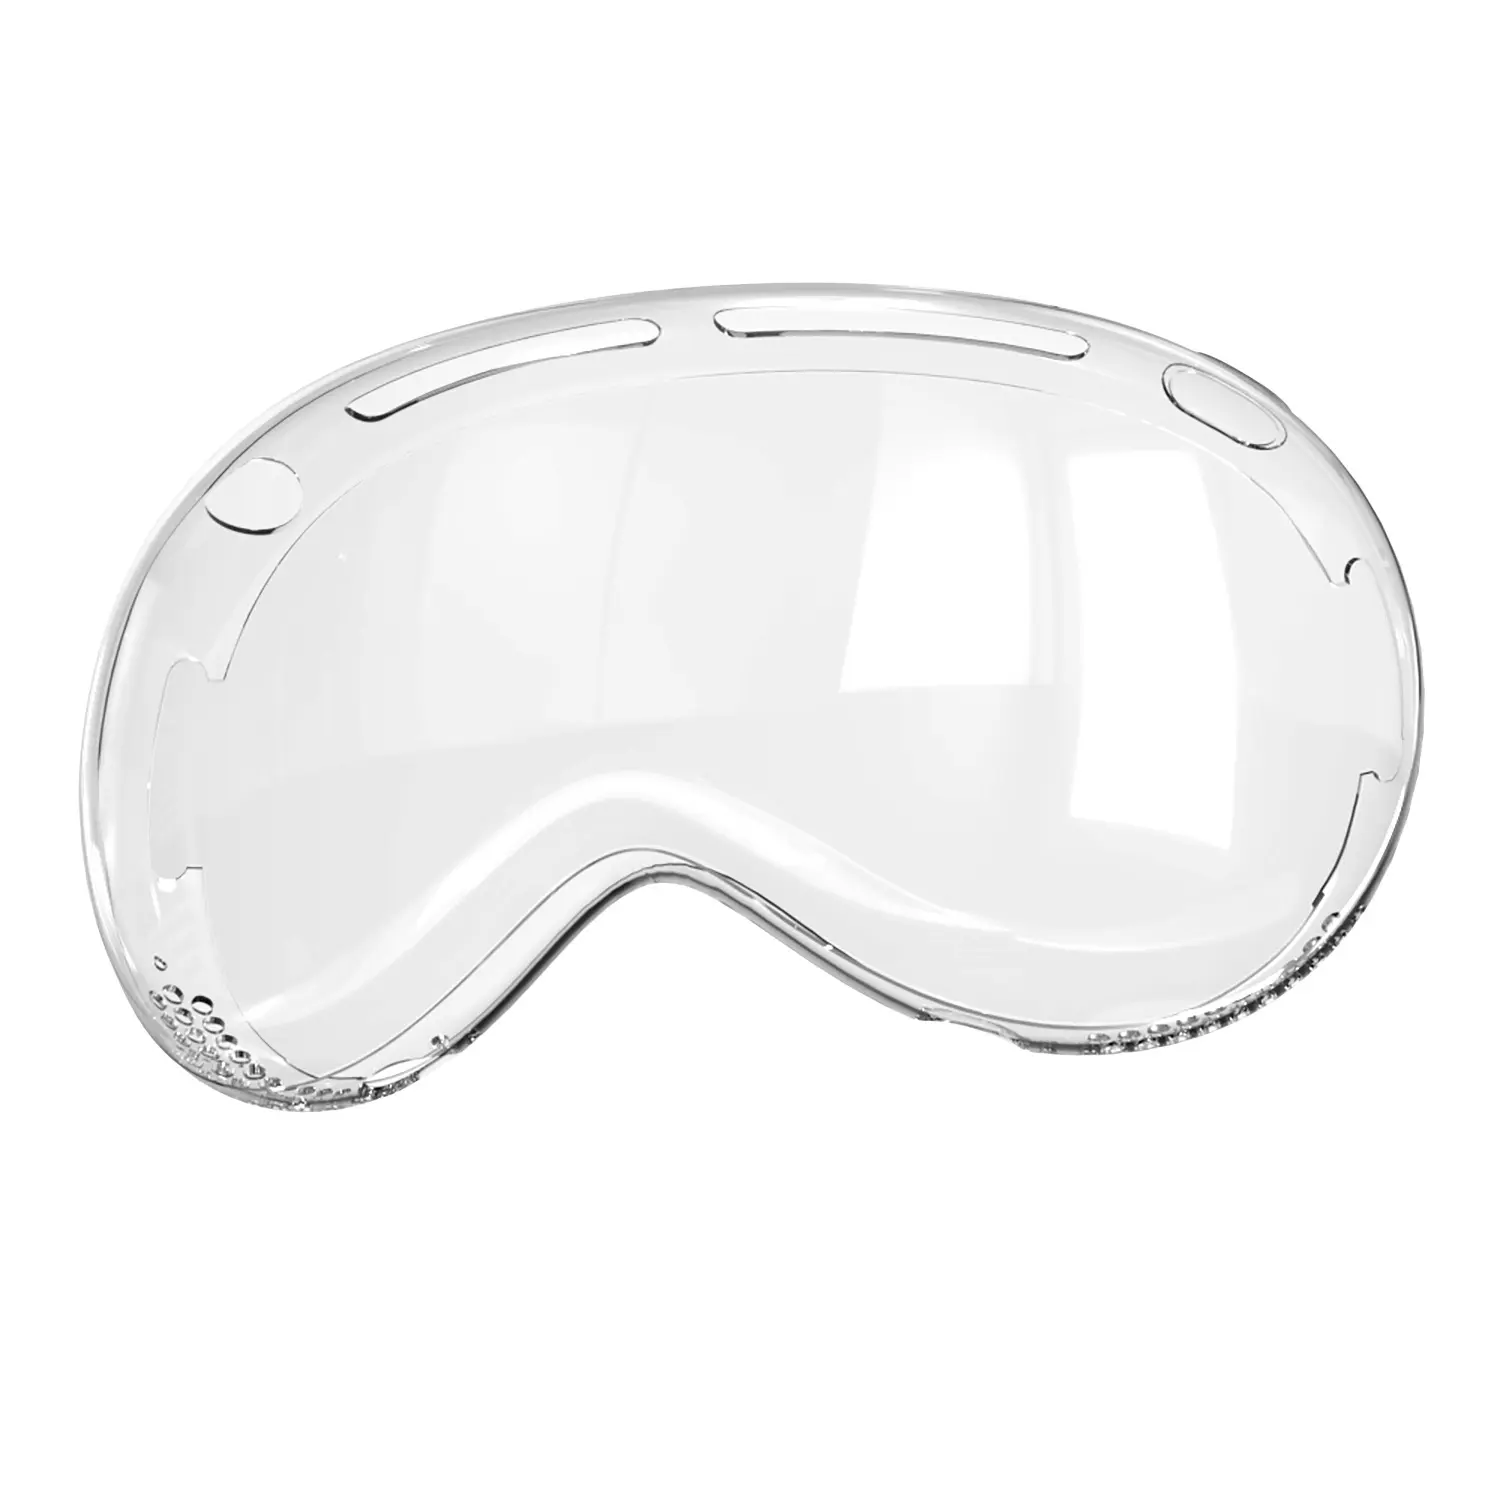 Capa protetora de TPU transparente para Apple Vision Pro VR headset óculos 3D e equipamento de montagem na cabeça capa de preservação